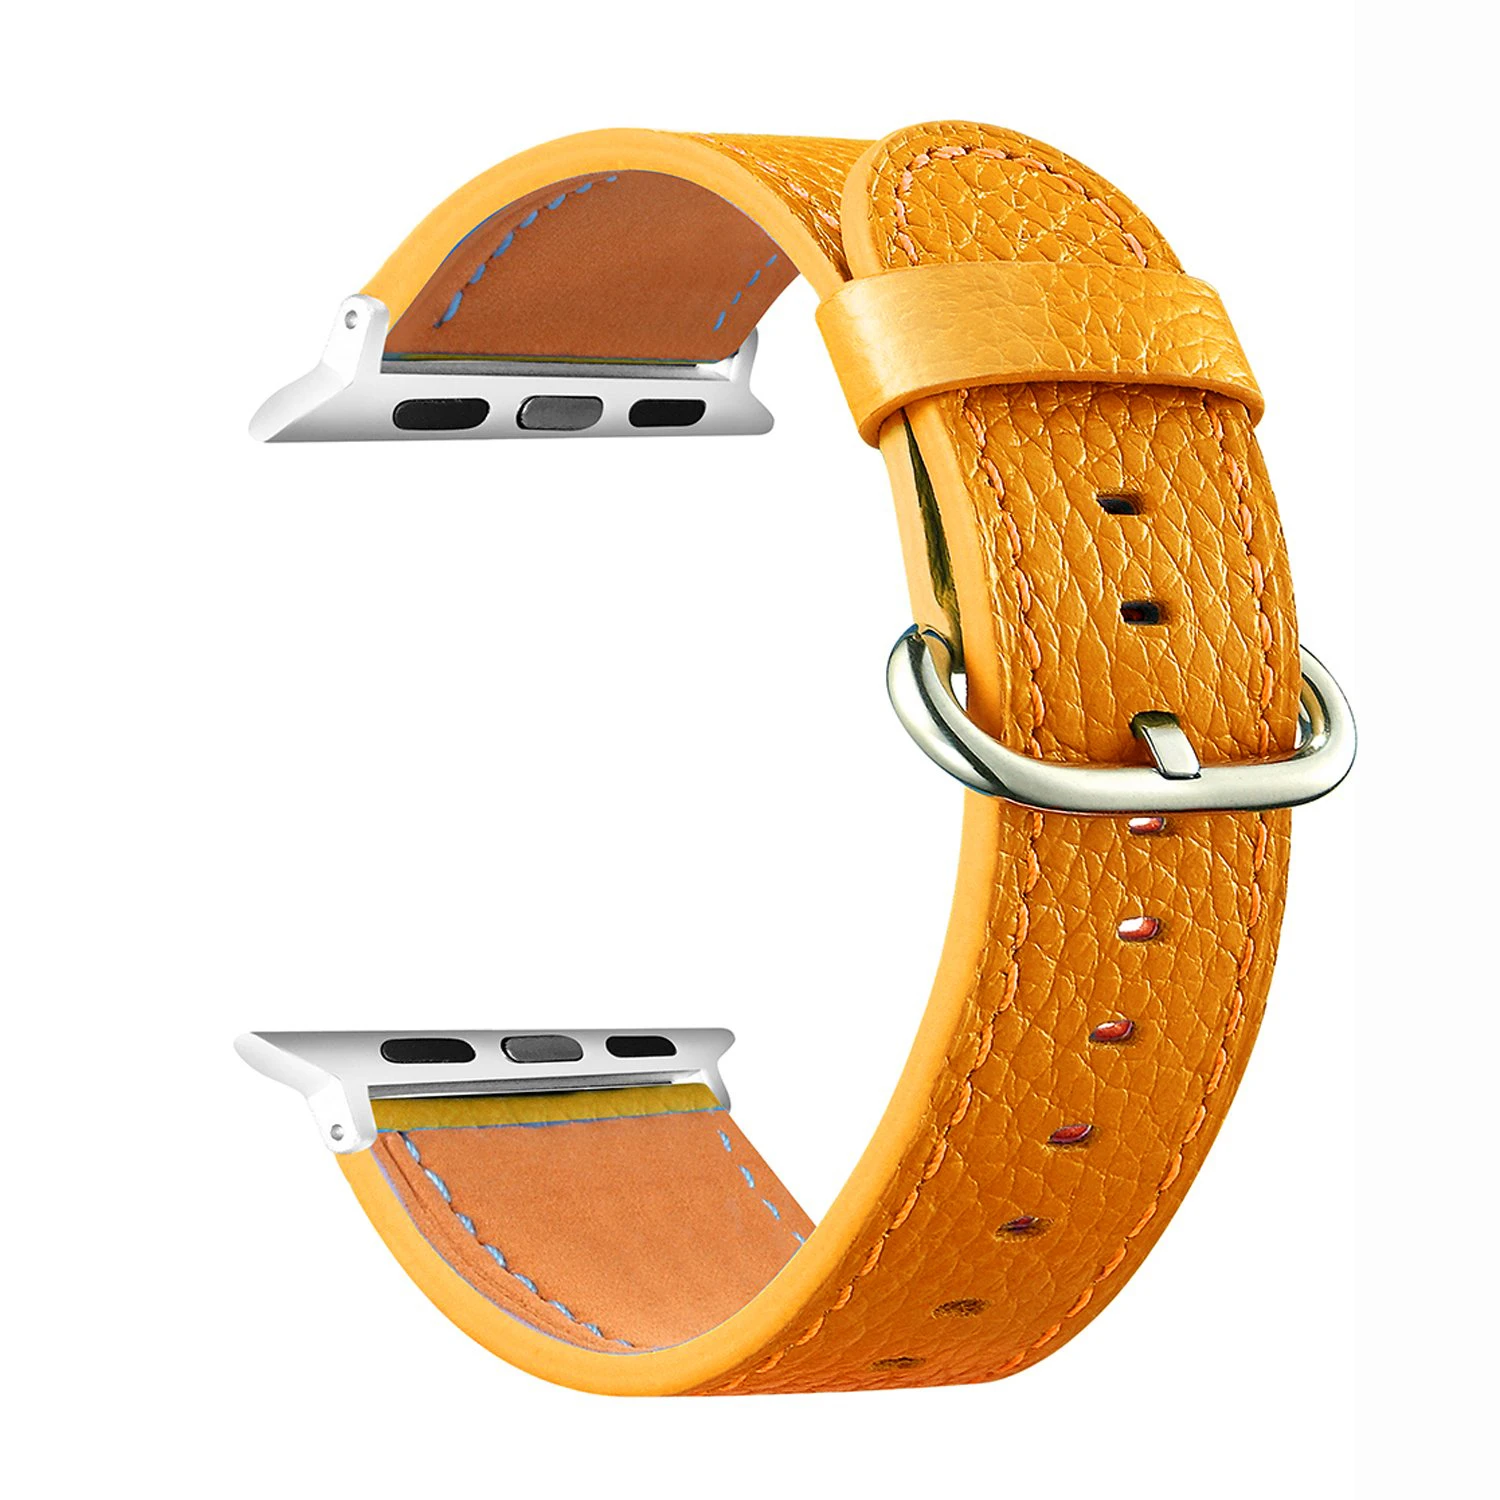 Ремешок кожаный Eastar для Apple Watch Band Series 4/3/2/1 8 цветов 42 мм 38 ремешок iwatch 5/4 40 44 |